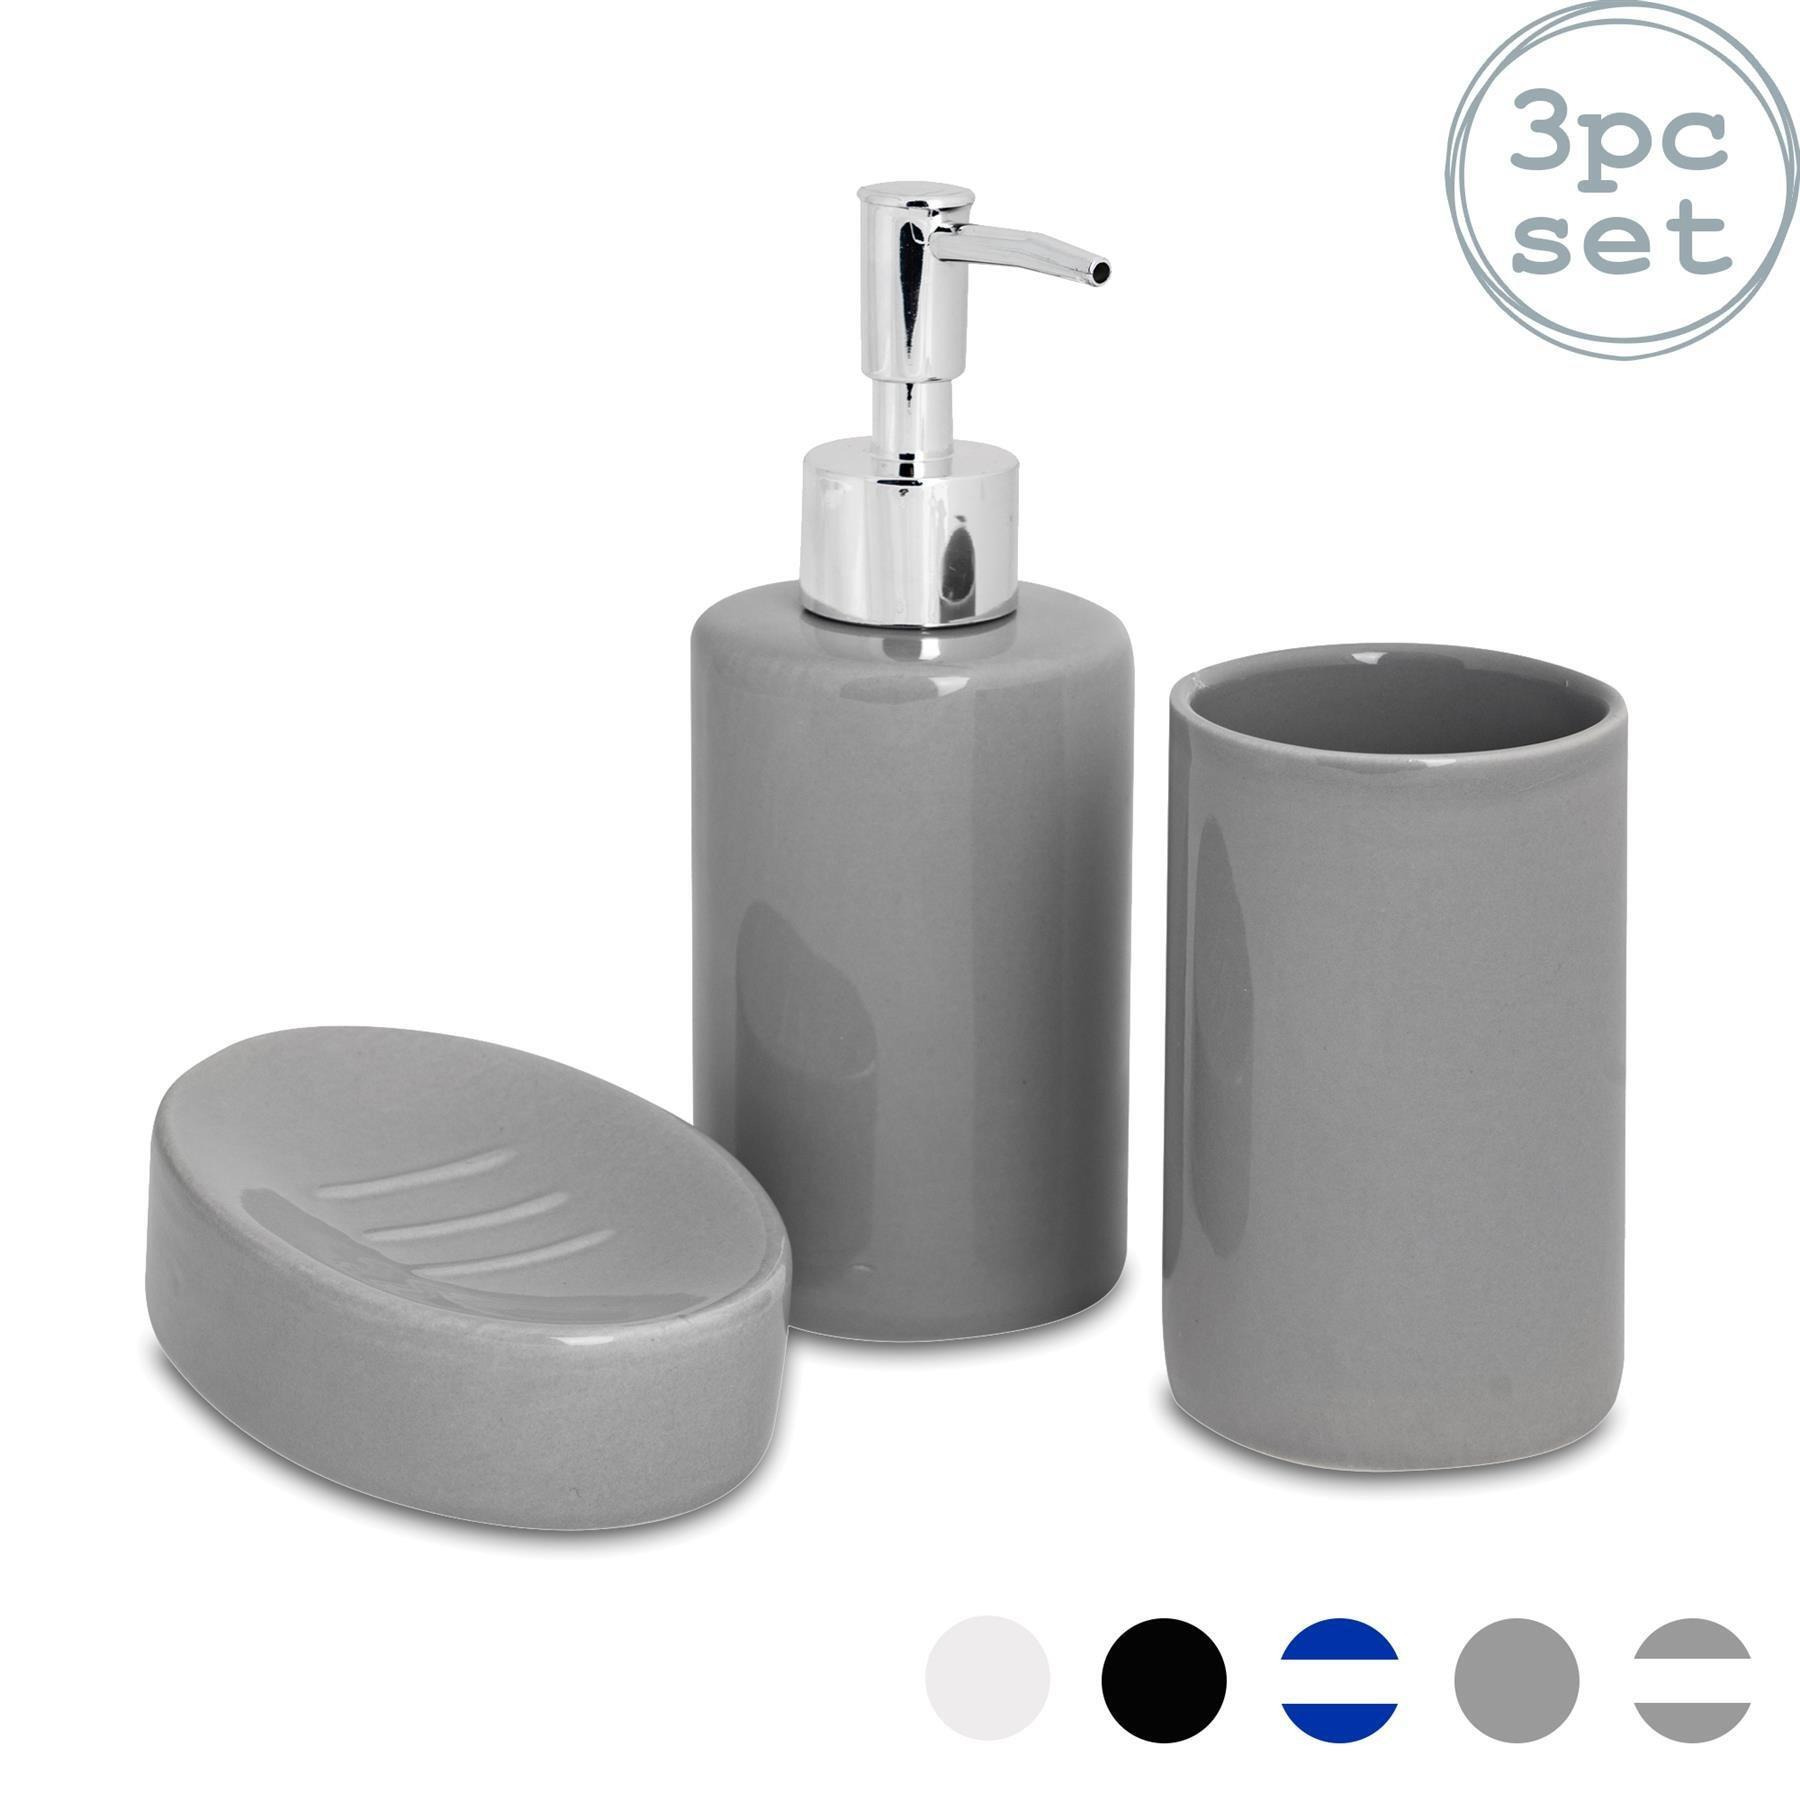 3 Piece Ceramic Bathroom Accessories Set - image 1